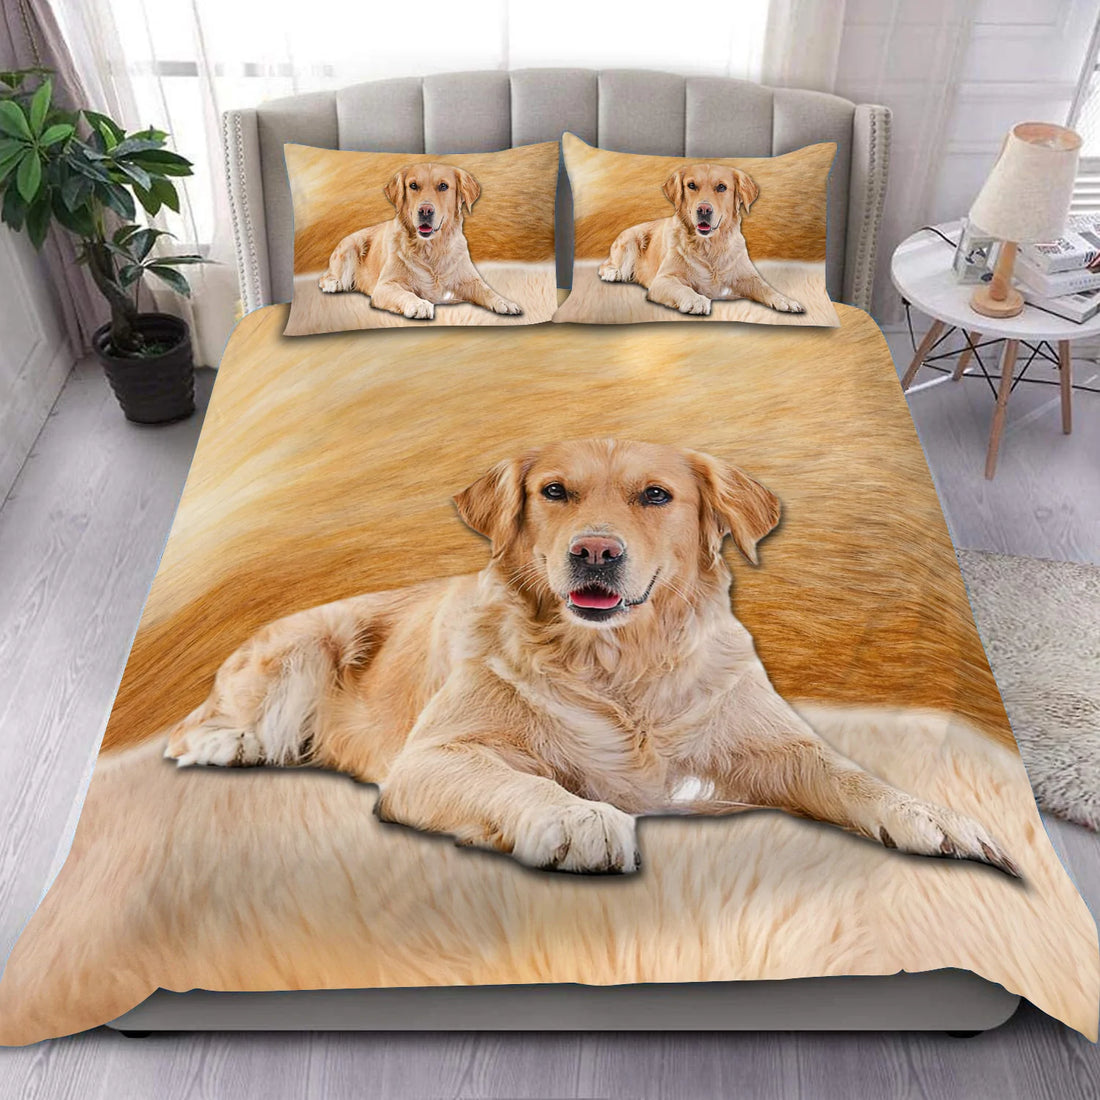 Labrador Bedding Set, Gift for Labrador Lovers- PF10121